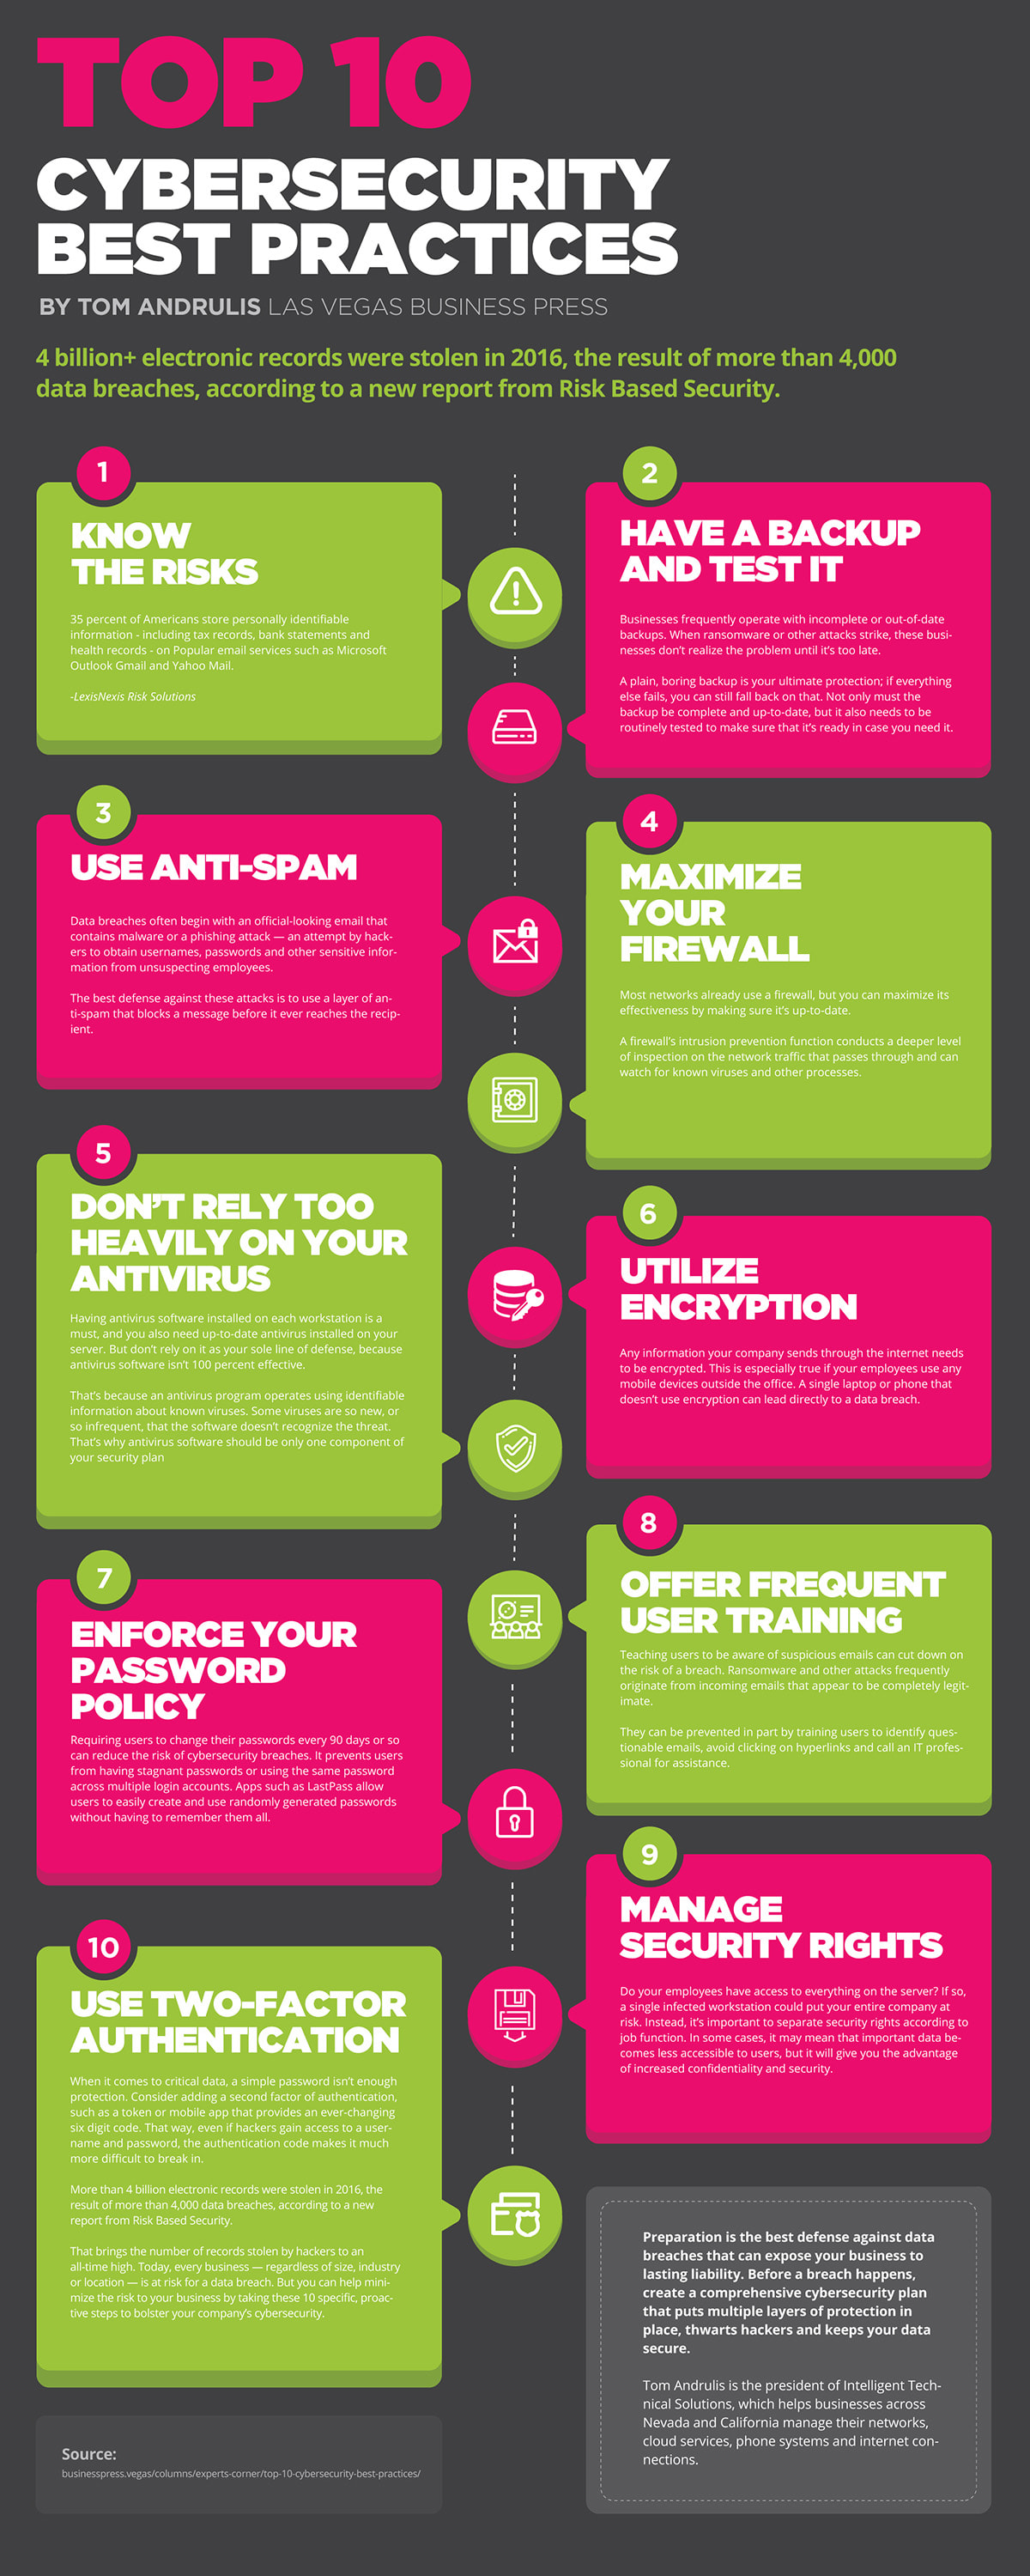 Top 10 Cybersecurity Best Practices